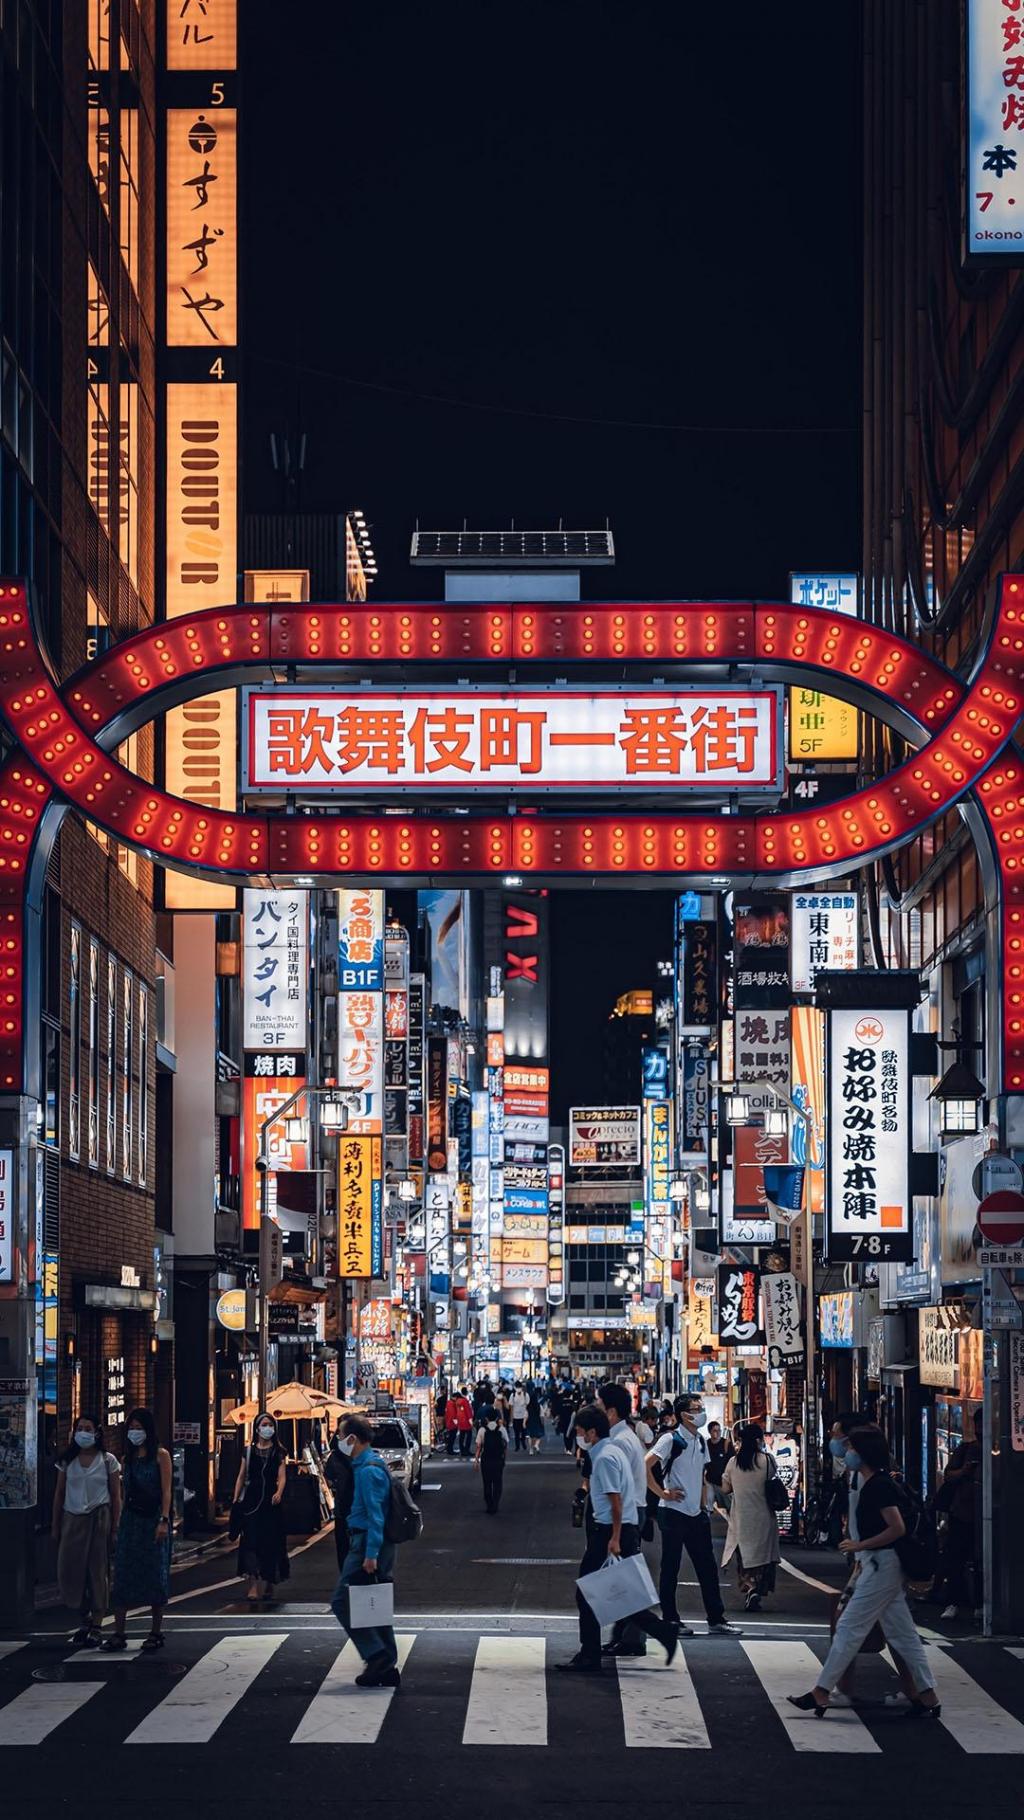 日本霓虹夜晚街景手机壁纸 手机壁纸 网页图库手机版